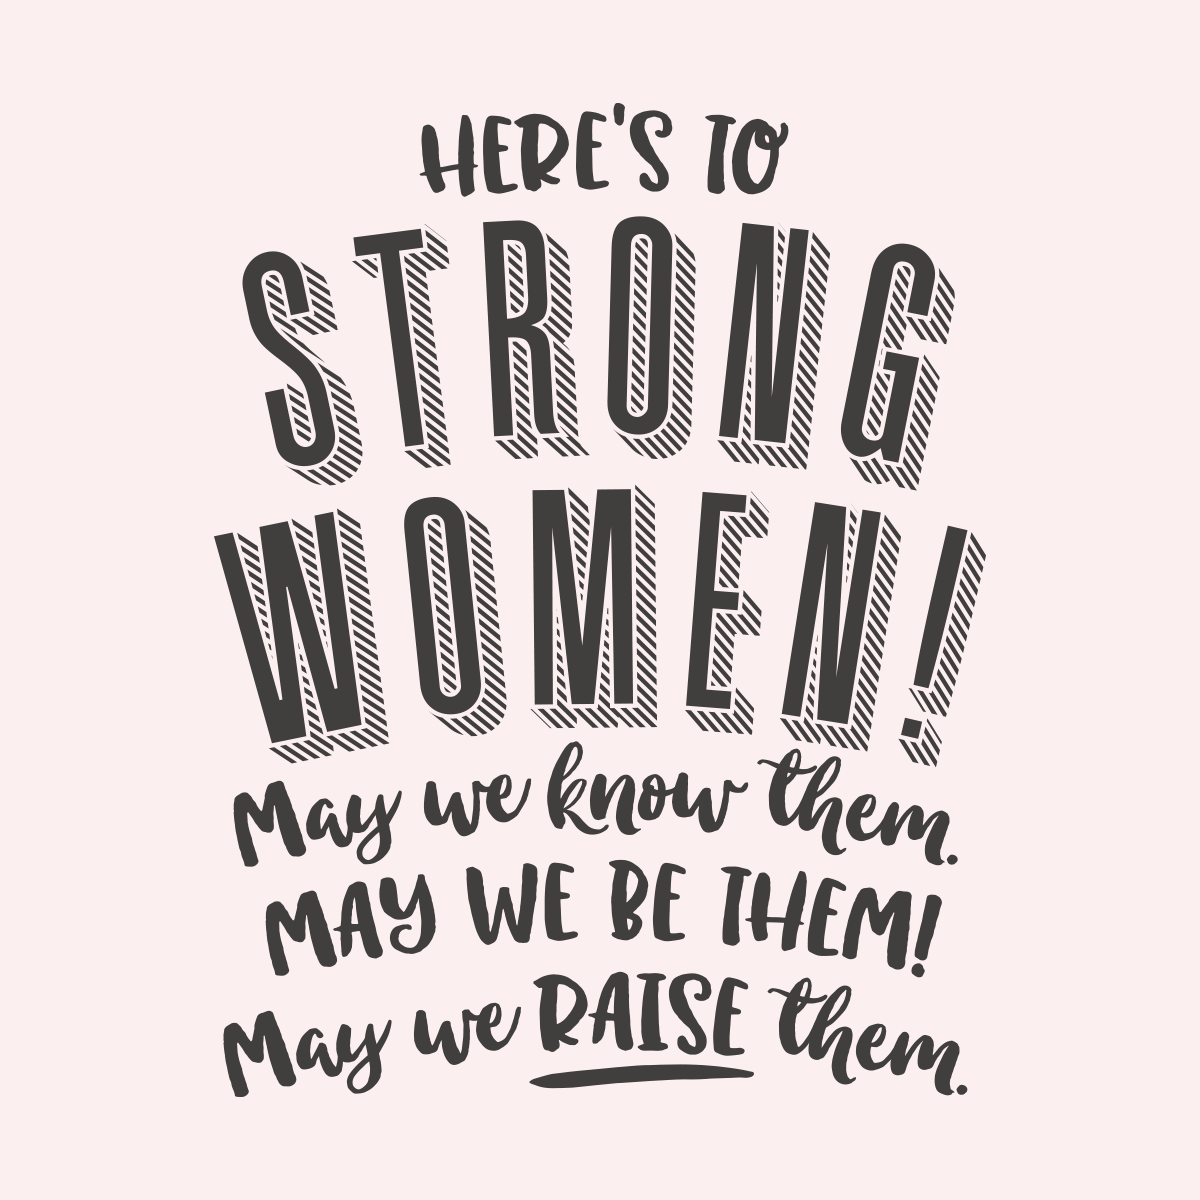 strong women